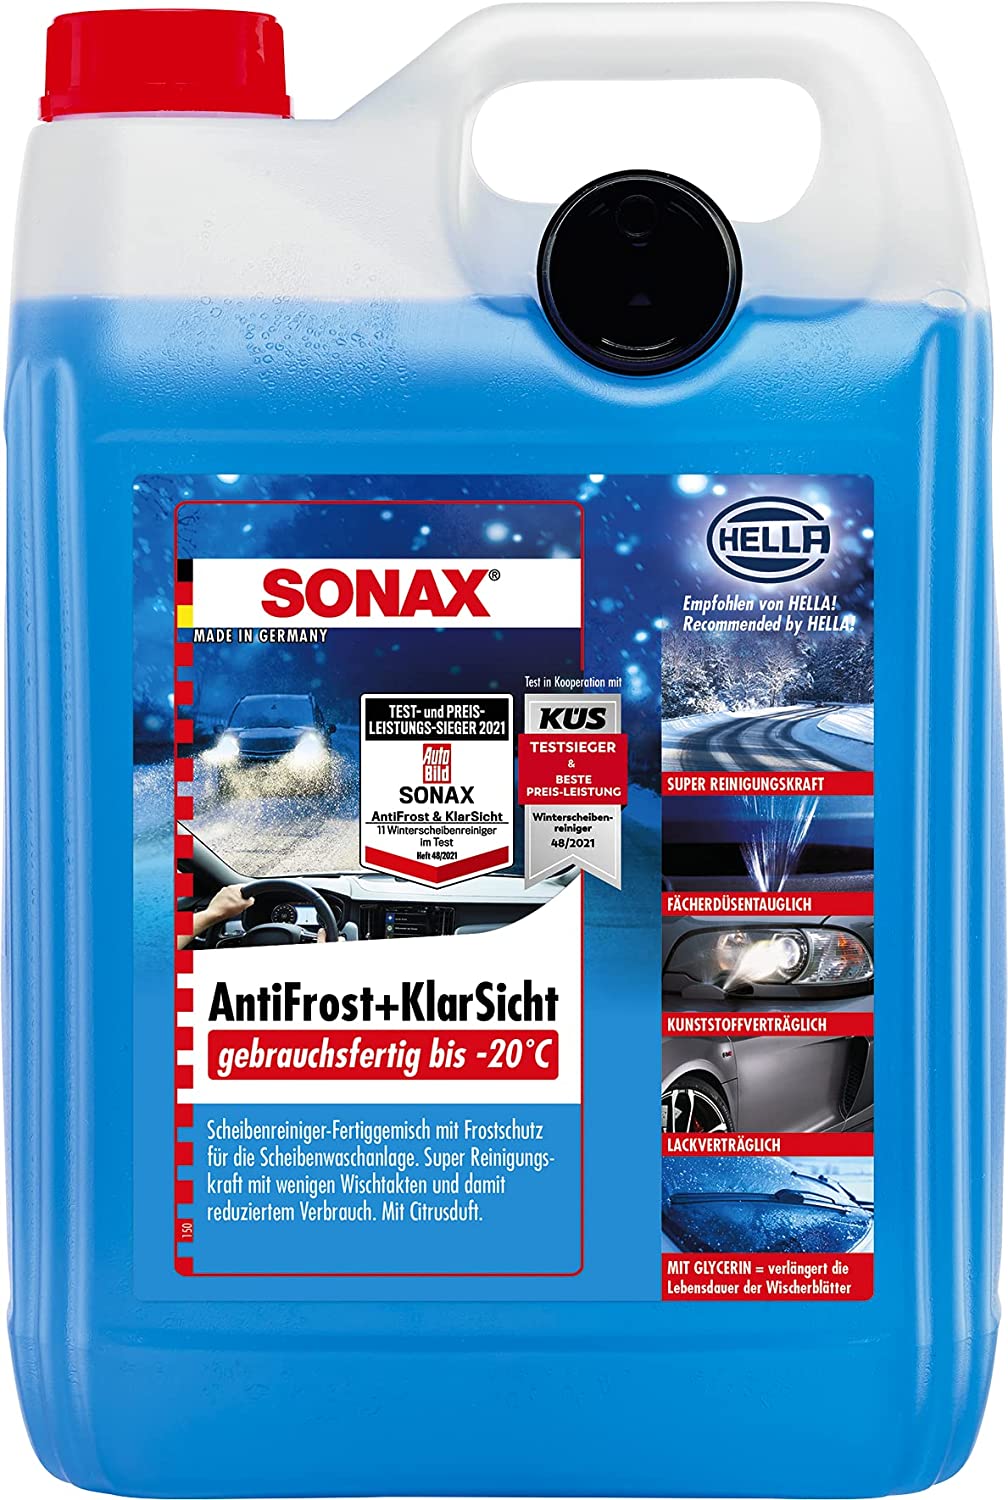 SONAX AntiFrost+KlarSicht Konzentrat 5 Liter